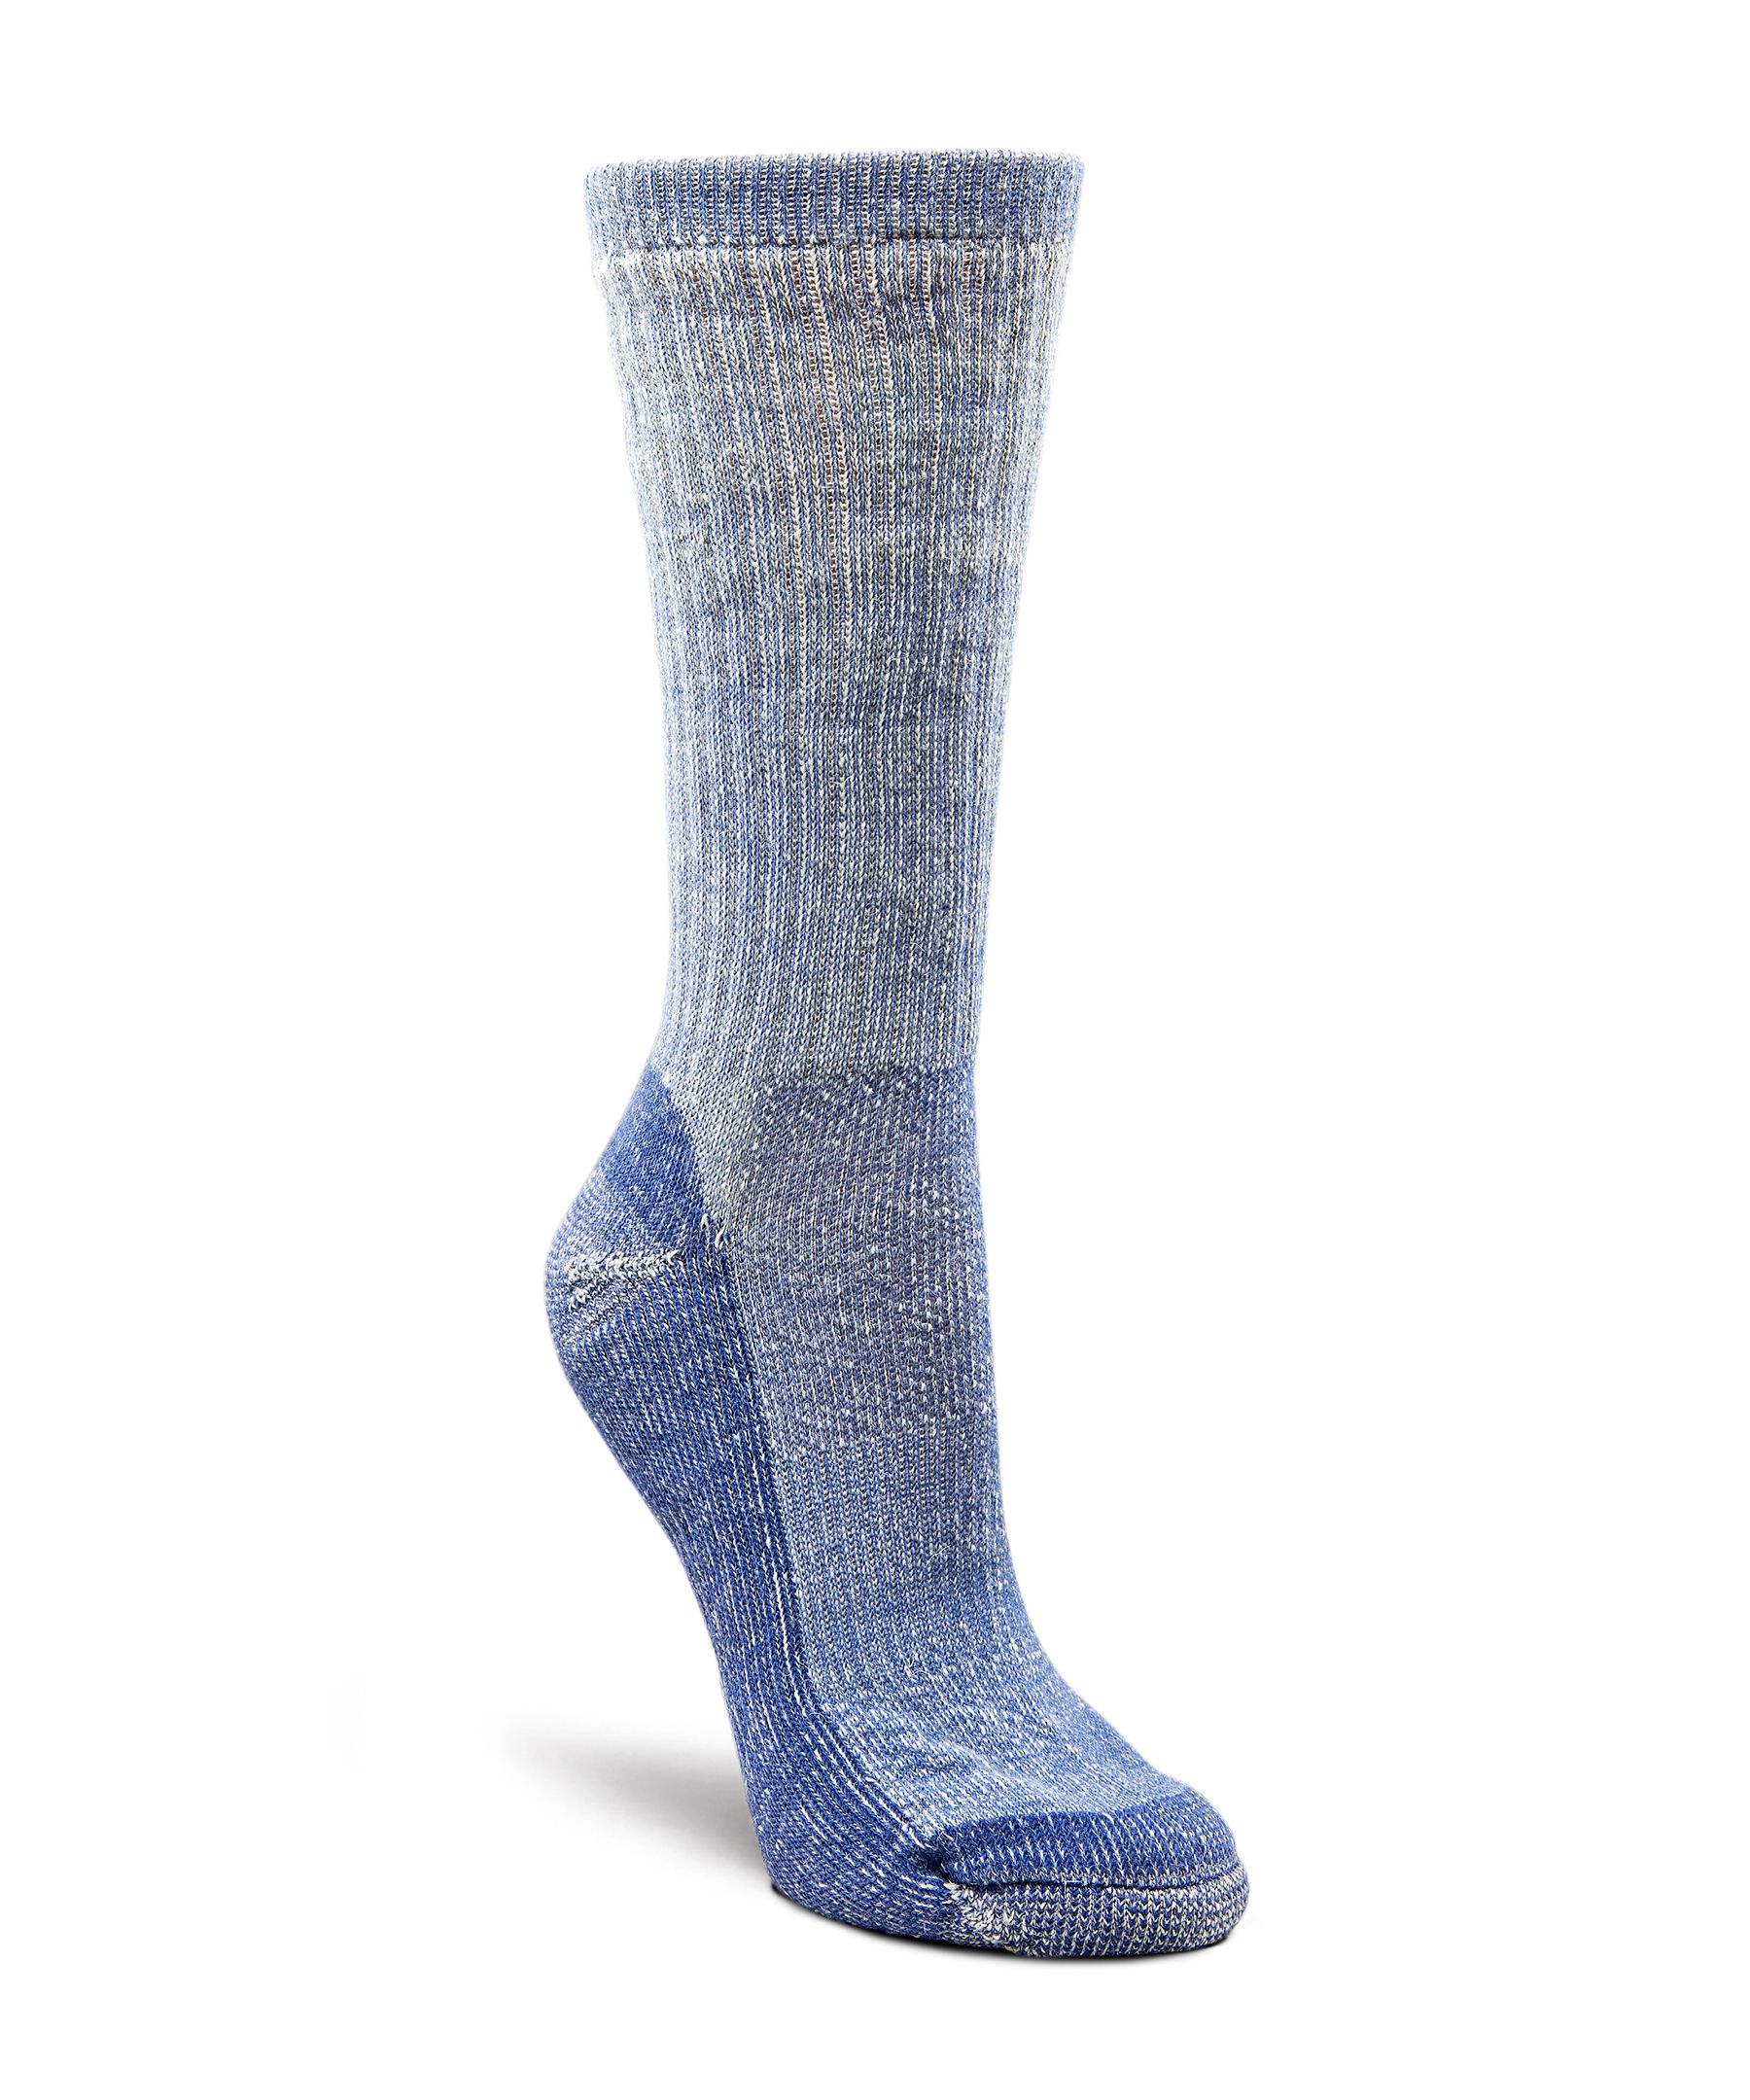 Mi-chaussettes confortables en laine mérinos pour femmes, WindRiver